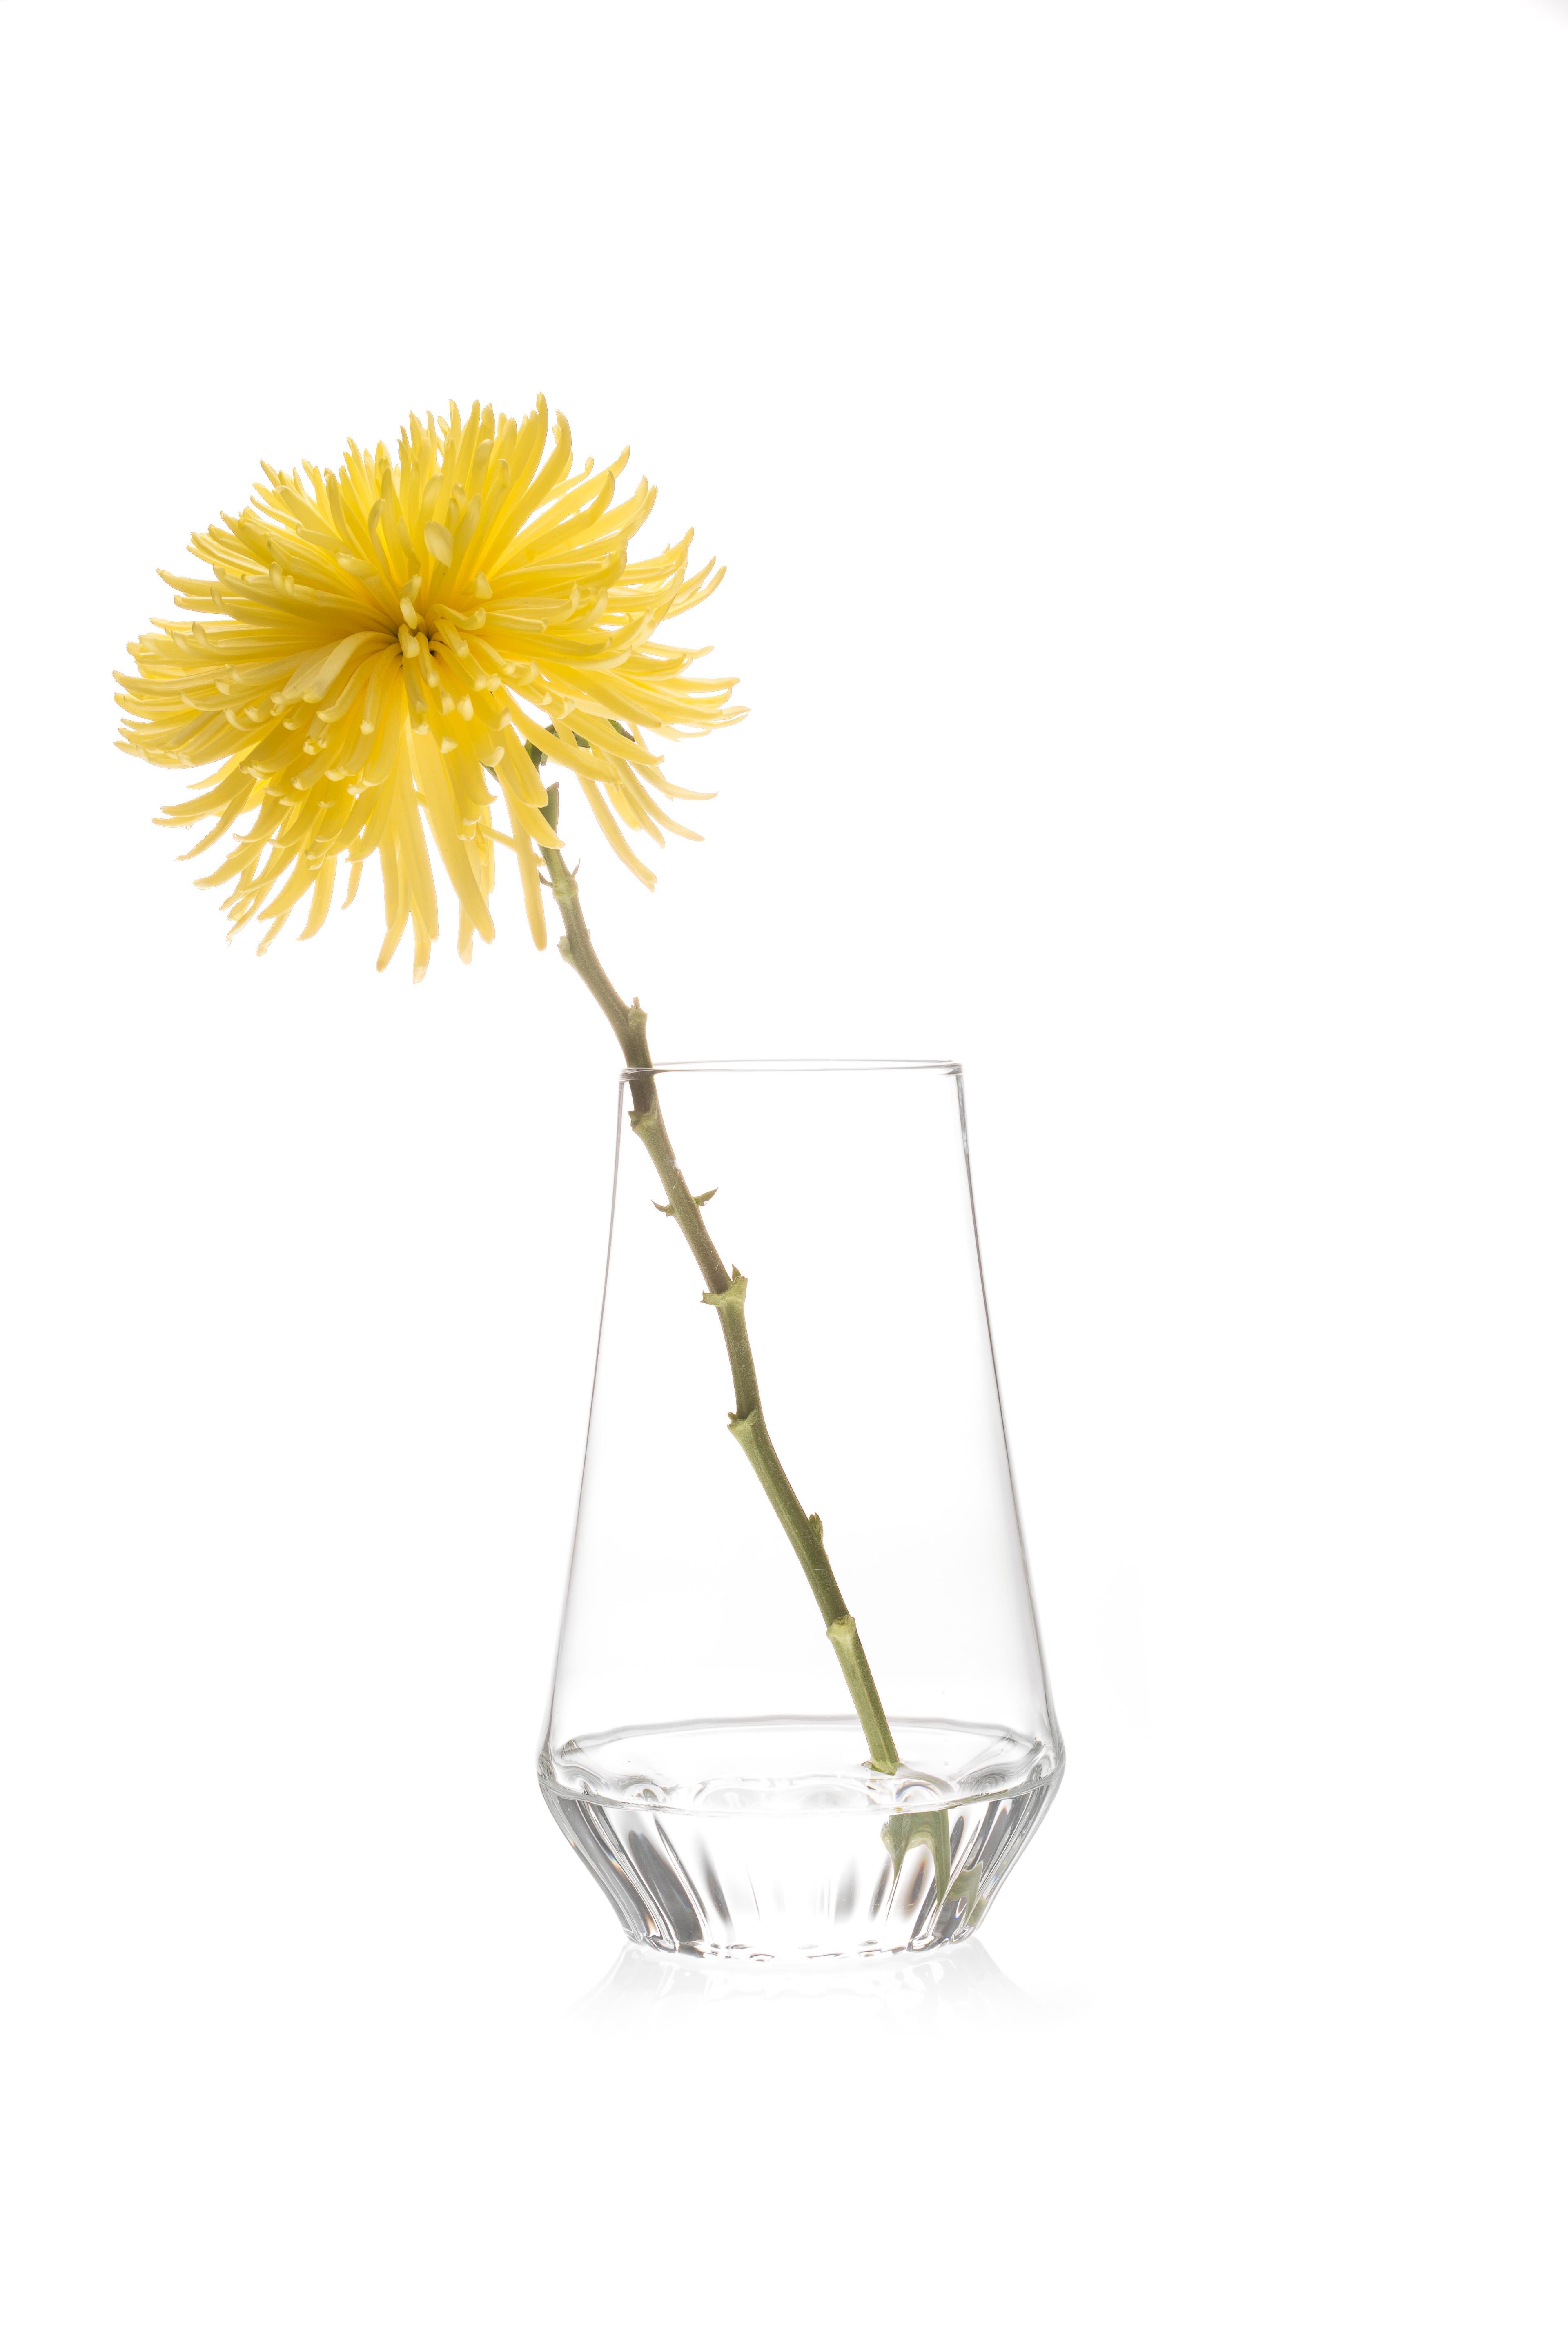 ROSSI VASE GROSS 

Ob ein einzelner Stiel oder ein Strauß, das klare Glas hebt den Blumenstiel hervor und macht ihn zu einem festen Bestandteil des Arrangements. Der linsenförmige Effekt des geriffelten Glases an der
Der Boden verdeckt die Enden der